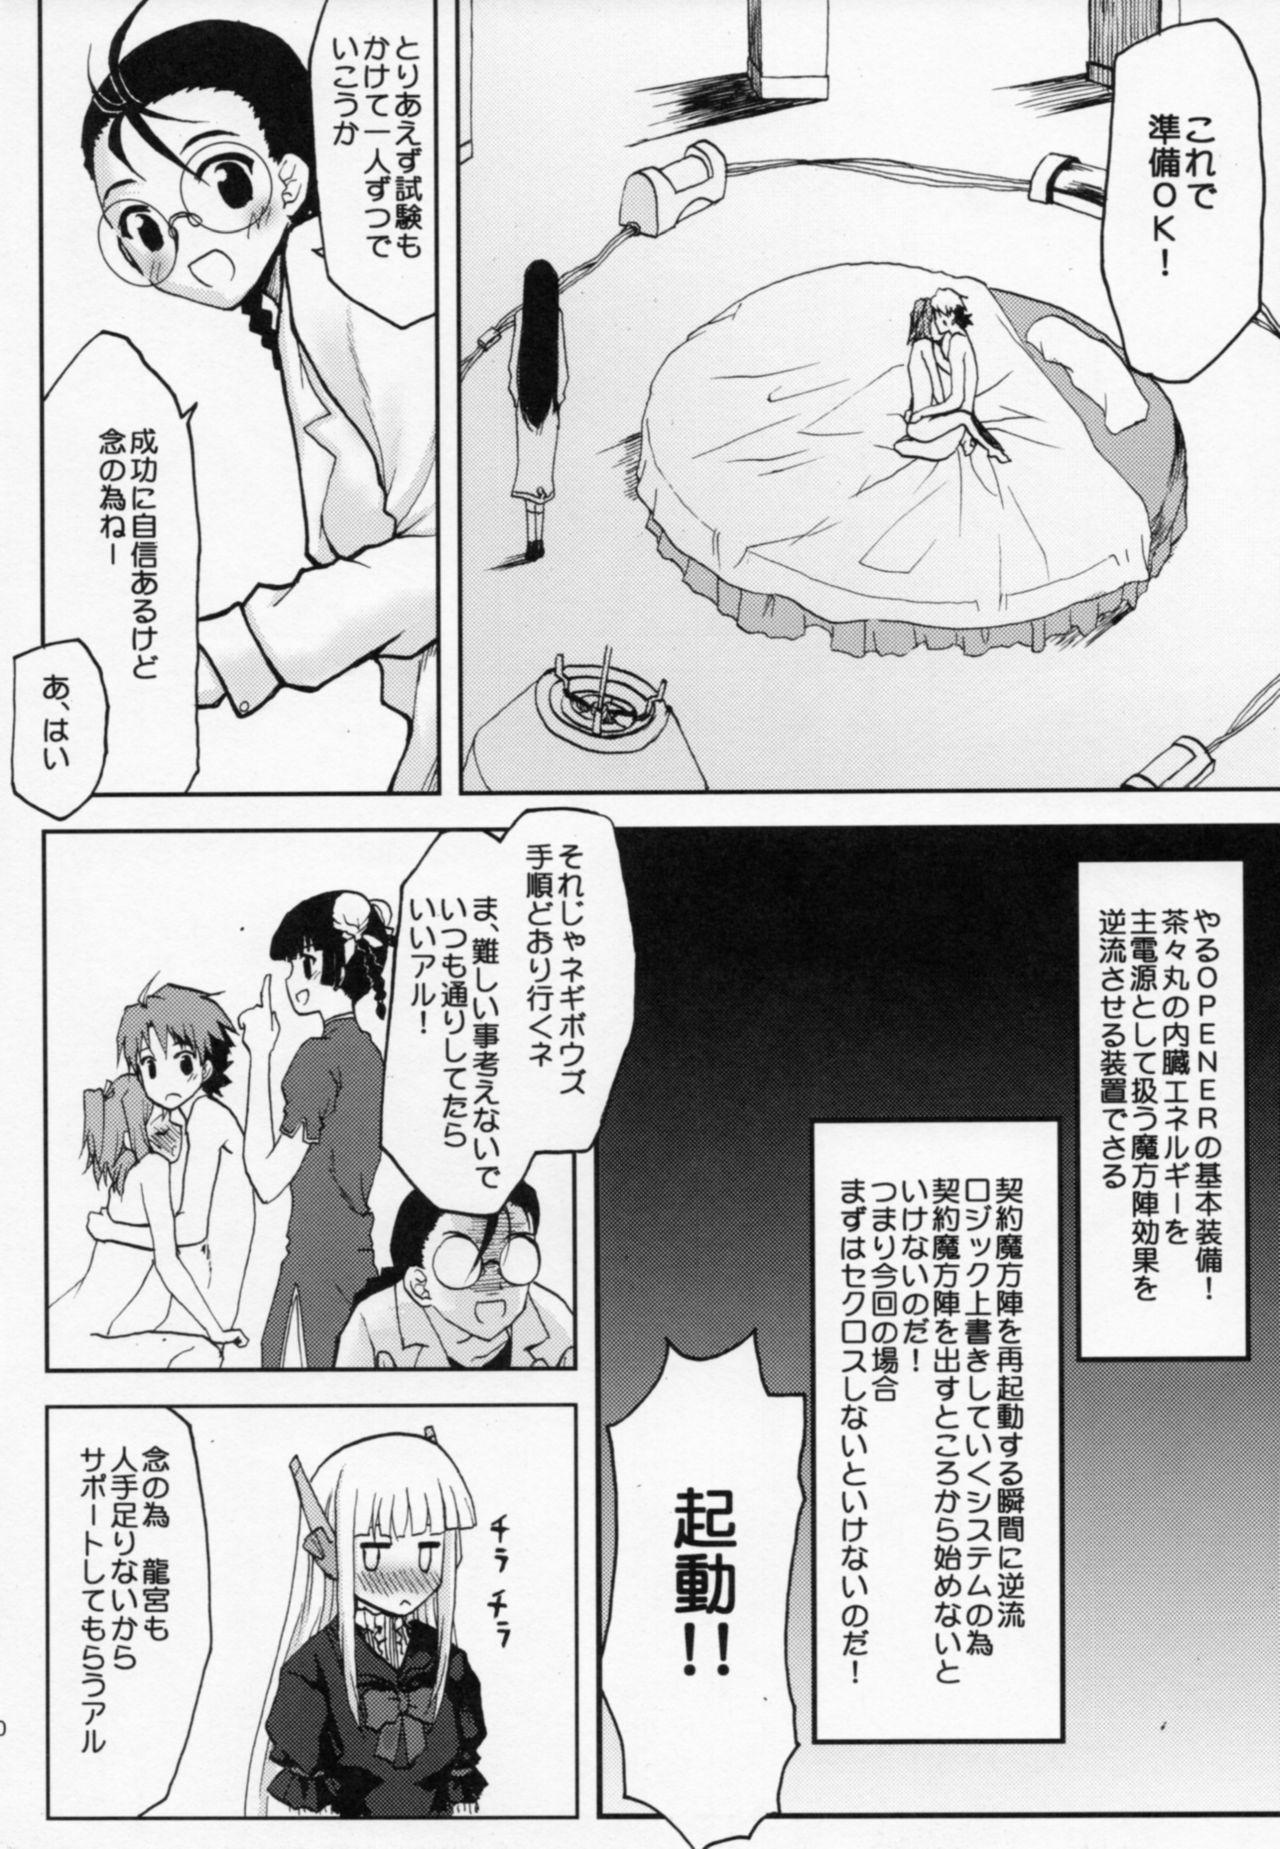 Hot Whores .negi//Akushou Heni vol.2 - Mahou sensei negima Girl On Girl - Page 11